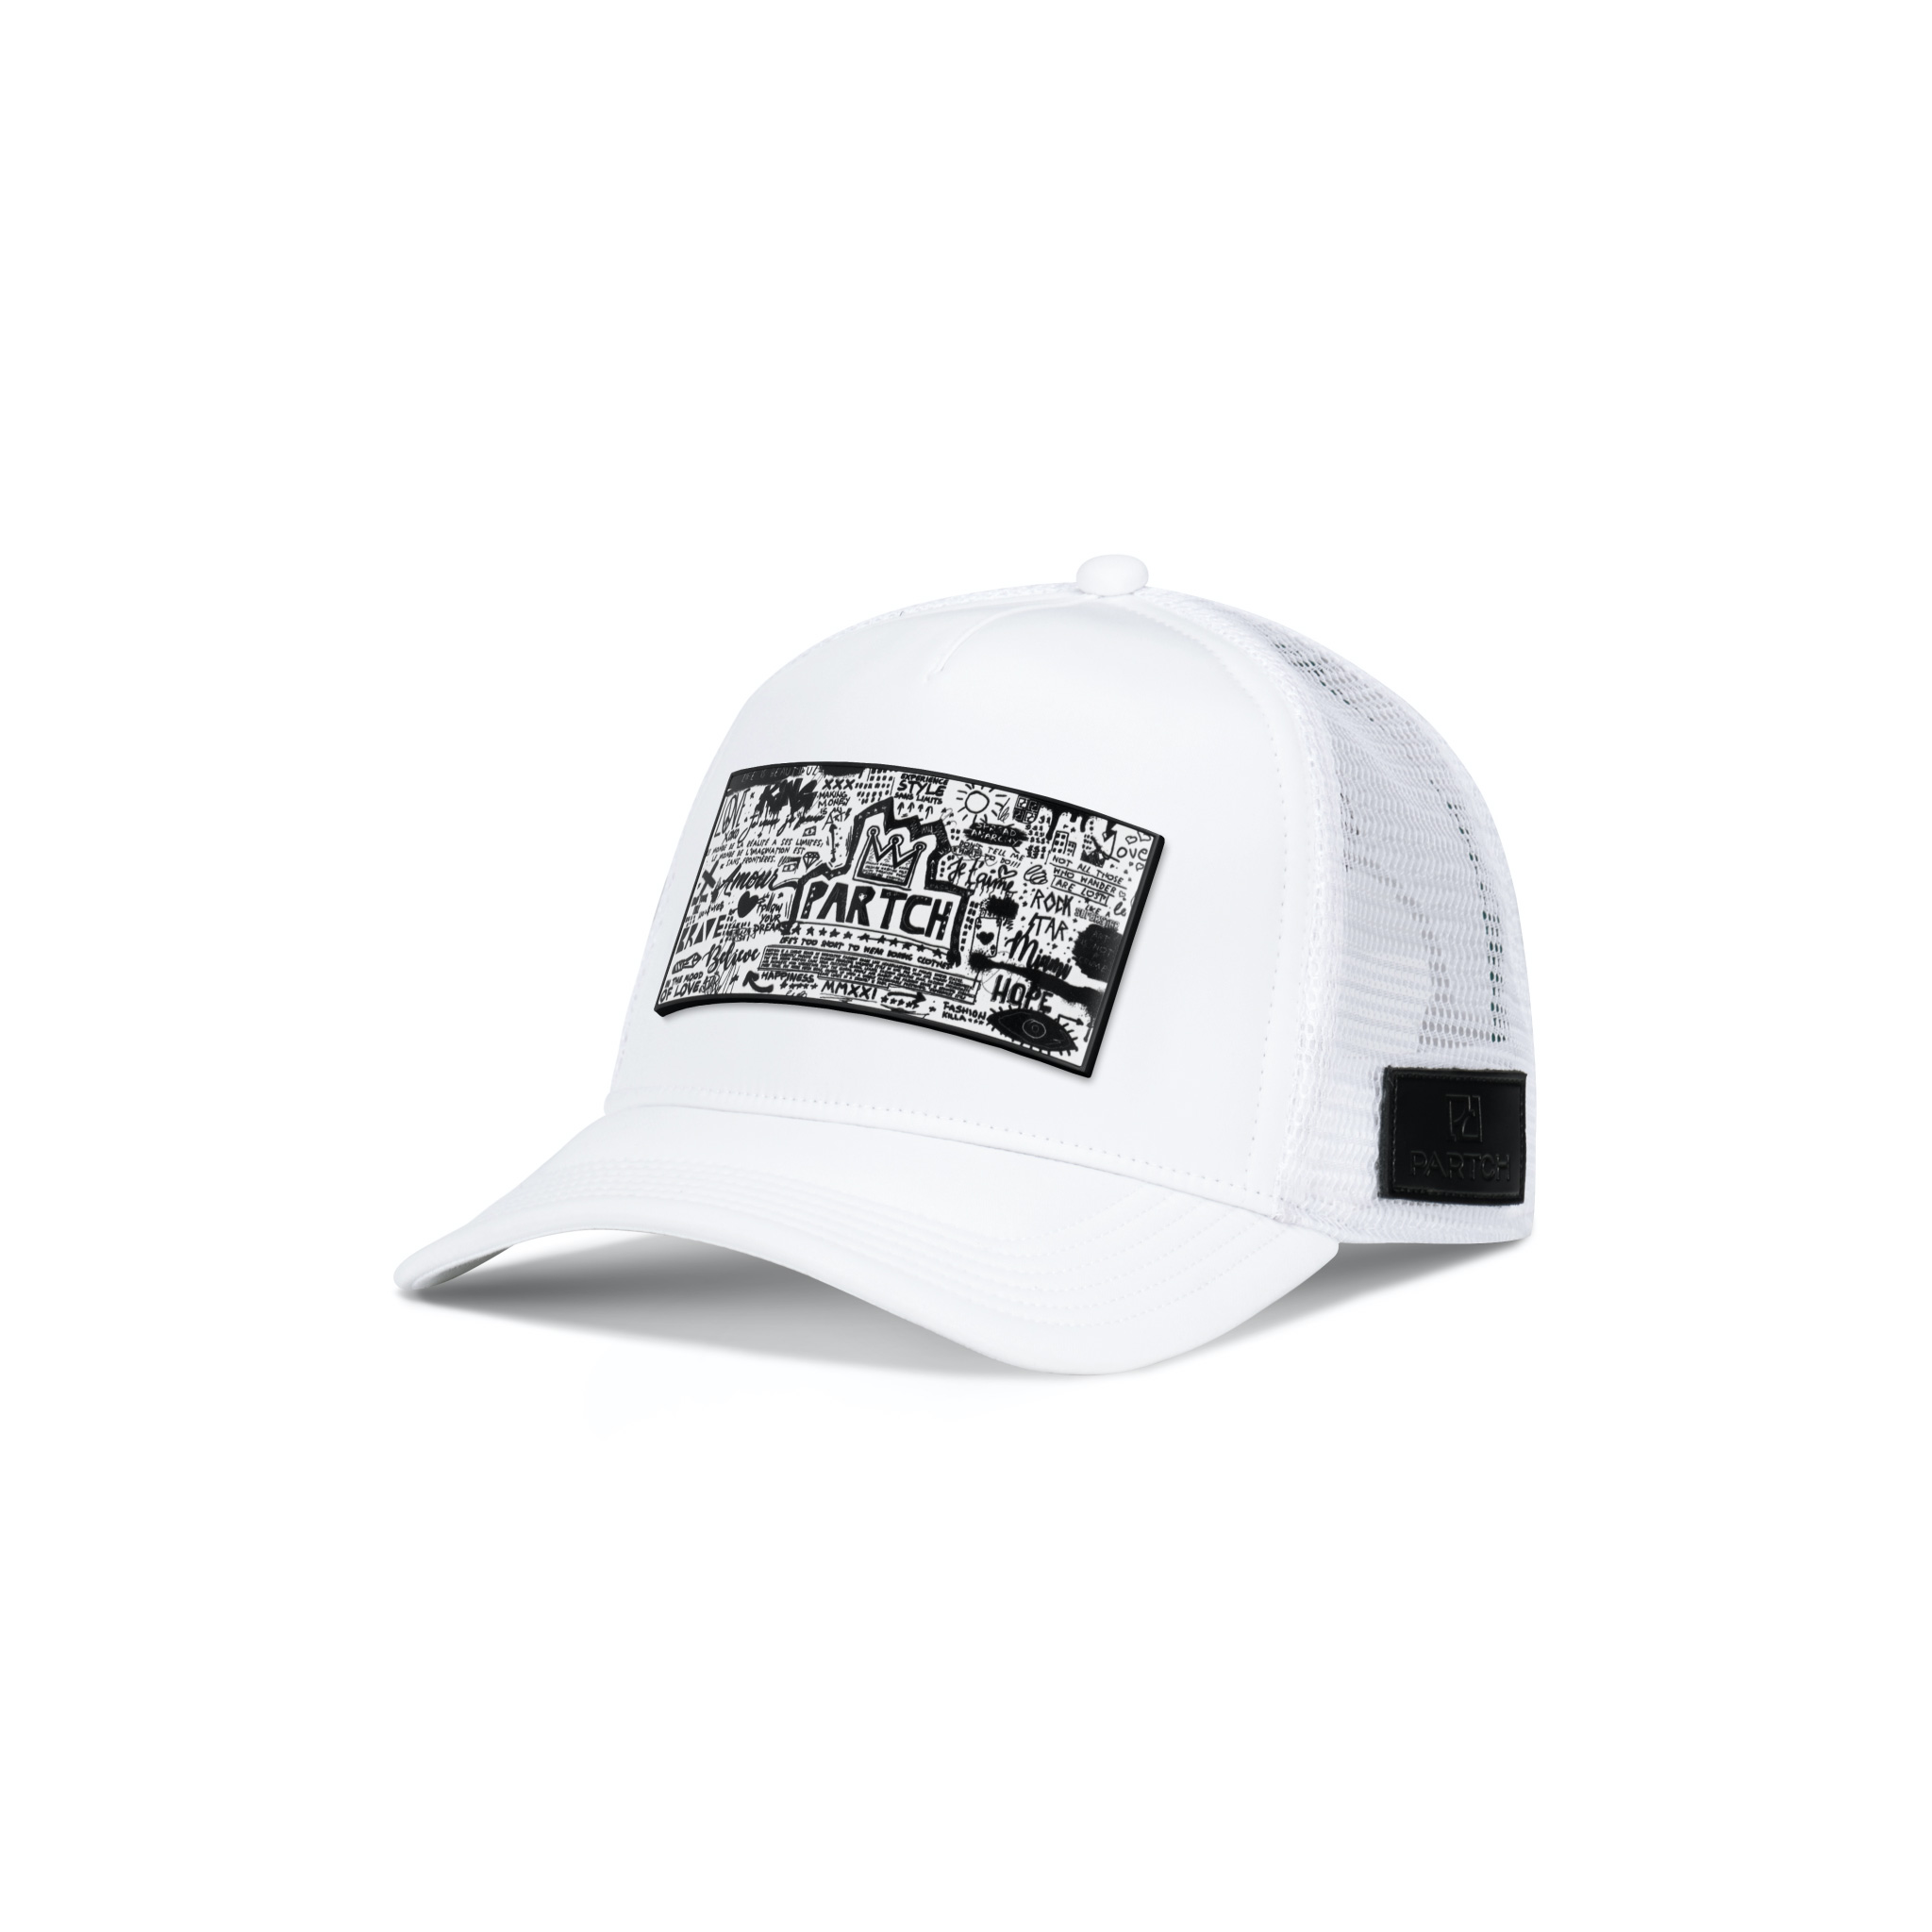 Partch Je t'aime Trucker Hat White removable clip